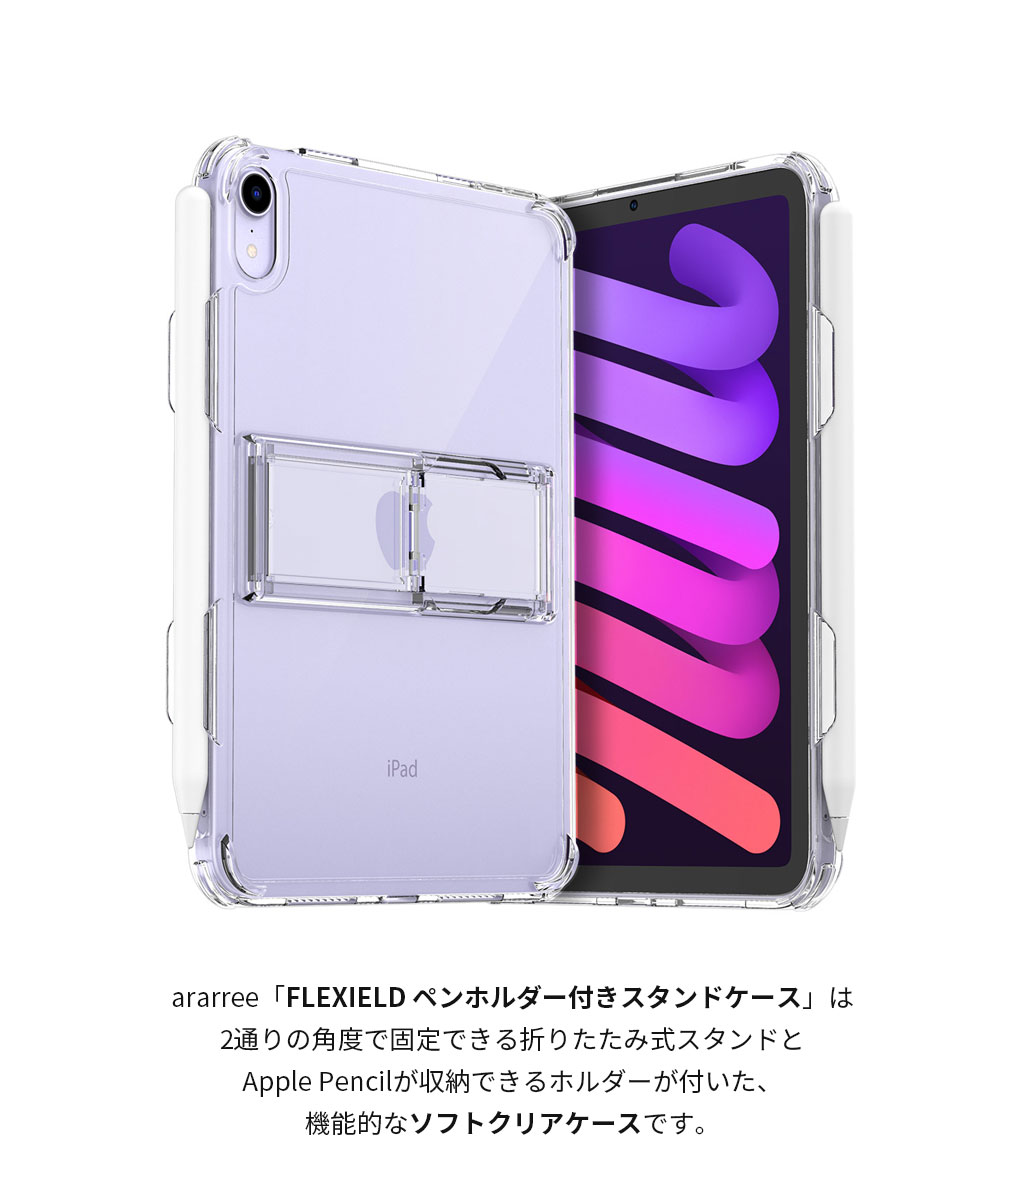 FLEXIELD ペンホルダー付き スタンドケース【iPad mini 第6世代